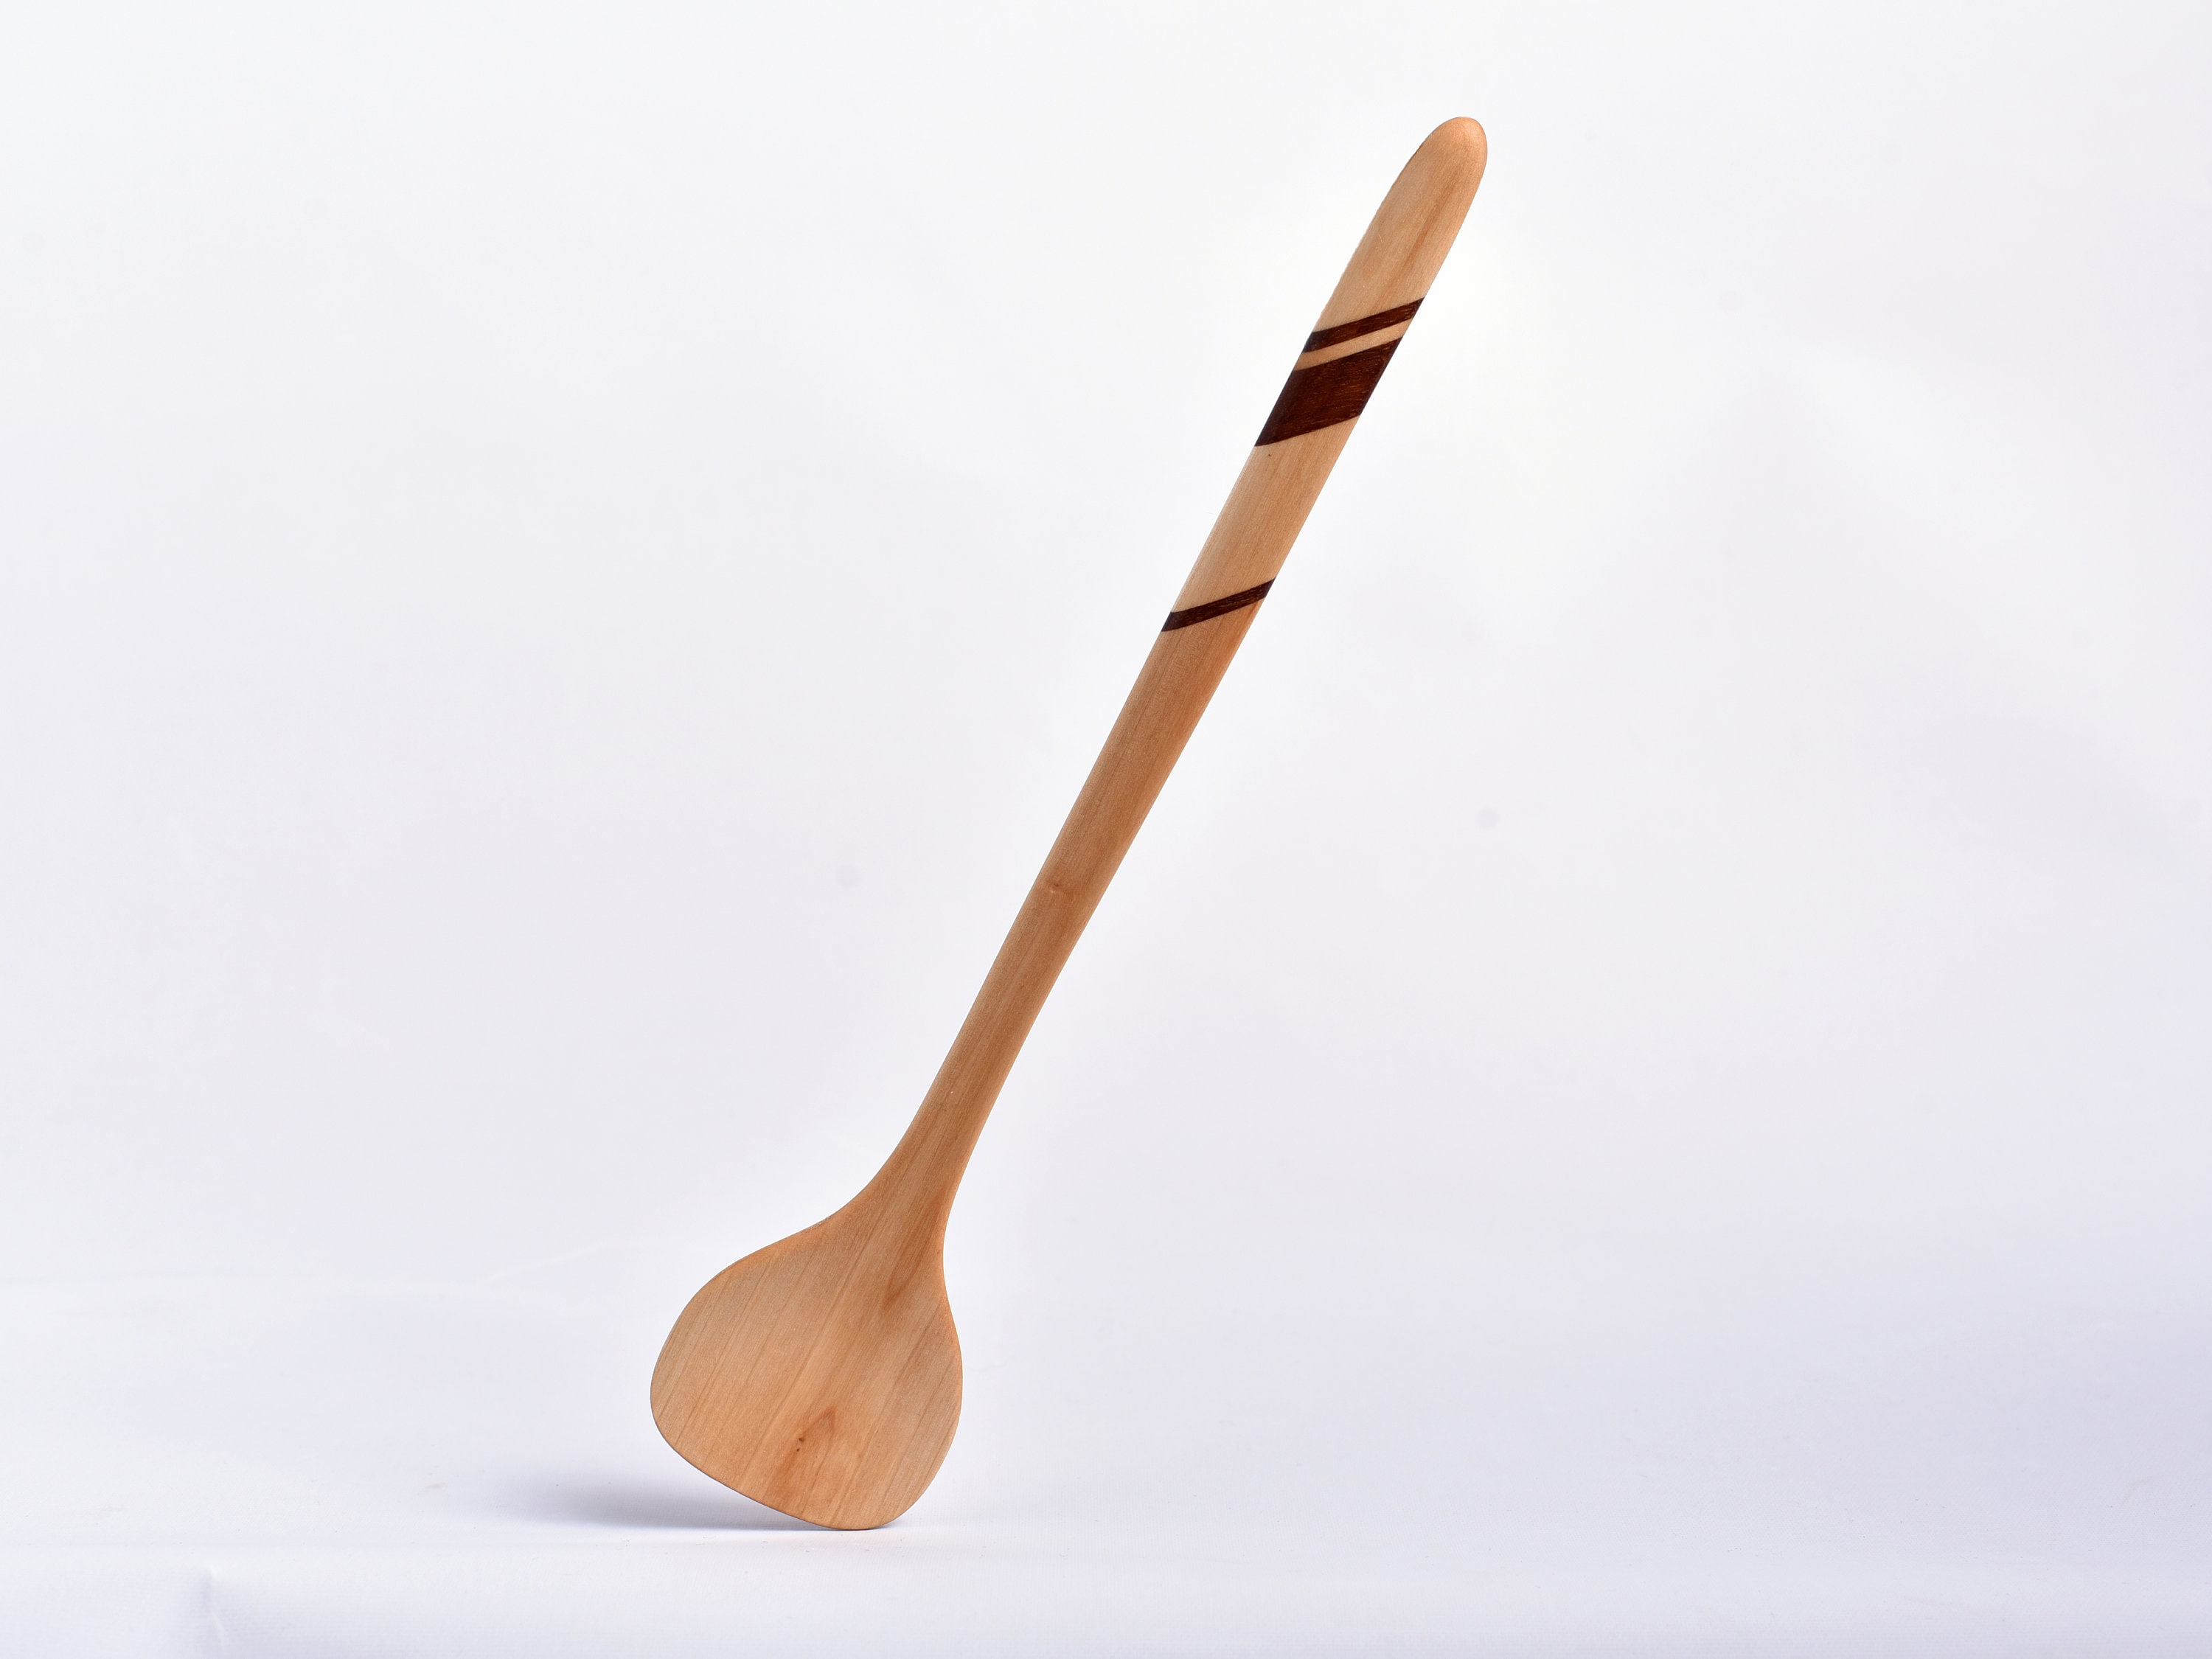 handmade organic wooden spoon original designed wooden spoon Sunset HELWELL wooden spoon 1st collection czech wood work